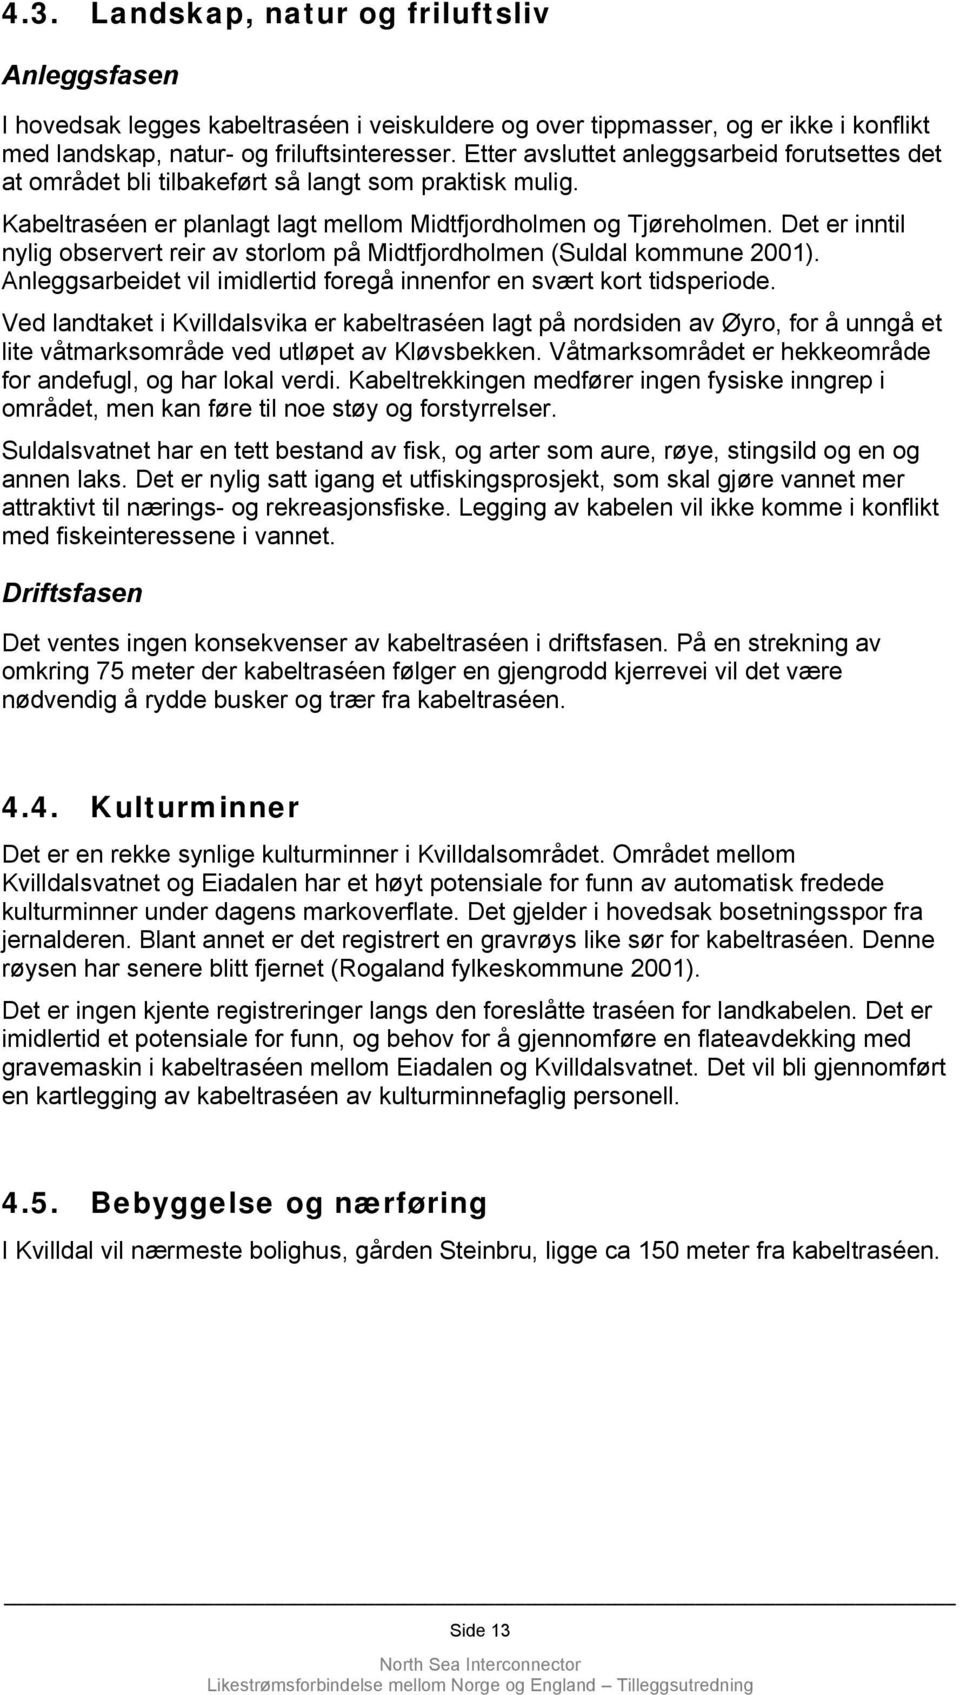 Det er inntil nylig observert reir av storlom på Midtfjordholmen (Suldal kommune 2001). Anleggsarbeidet vil imidlertid foregå innenfor en svært kort tidsperiode.